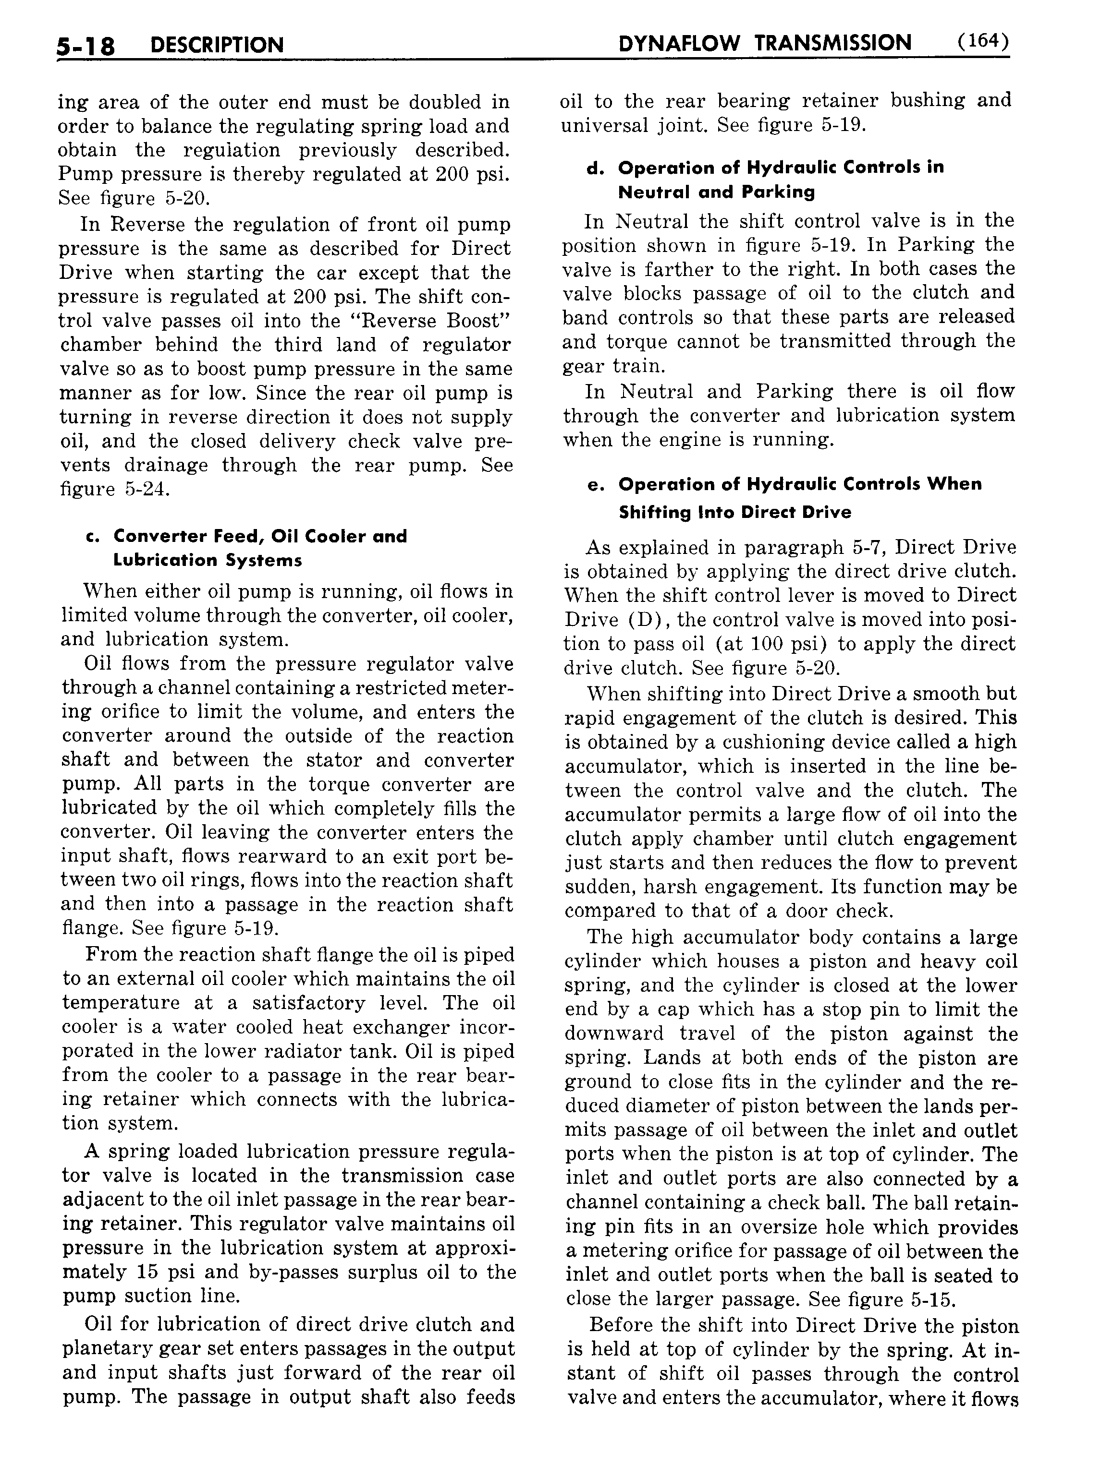 n_06 1956 Buick Shop Manual - Dynaflow-018-018.jpg